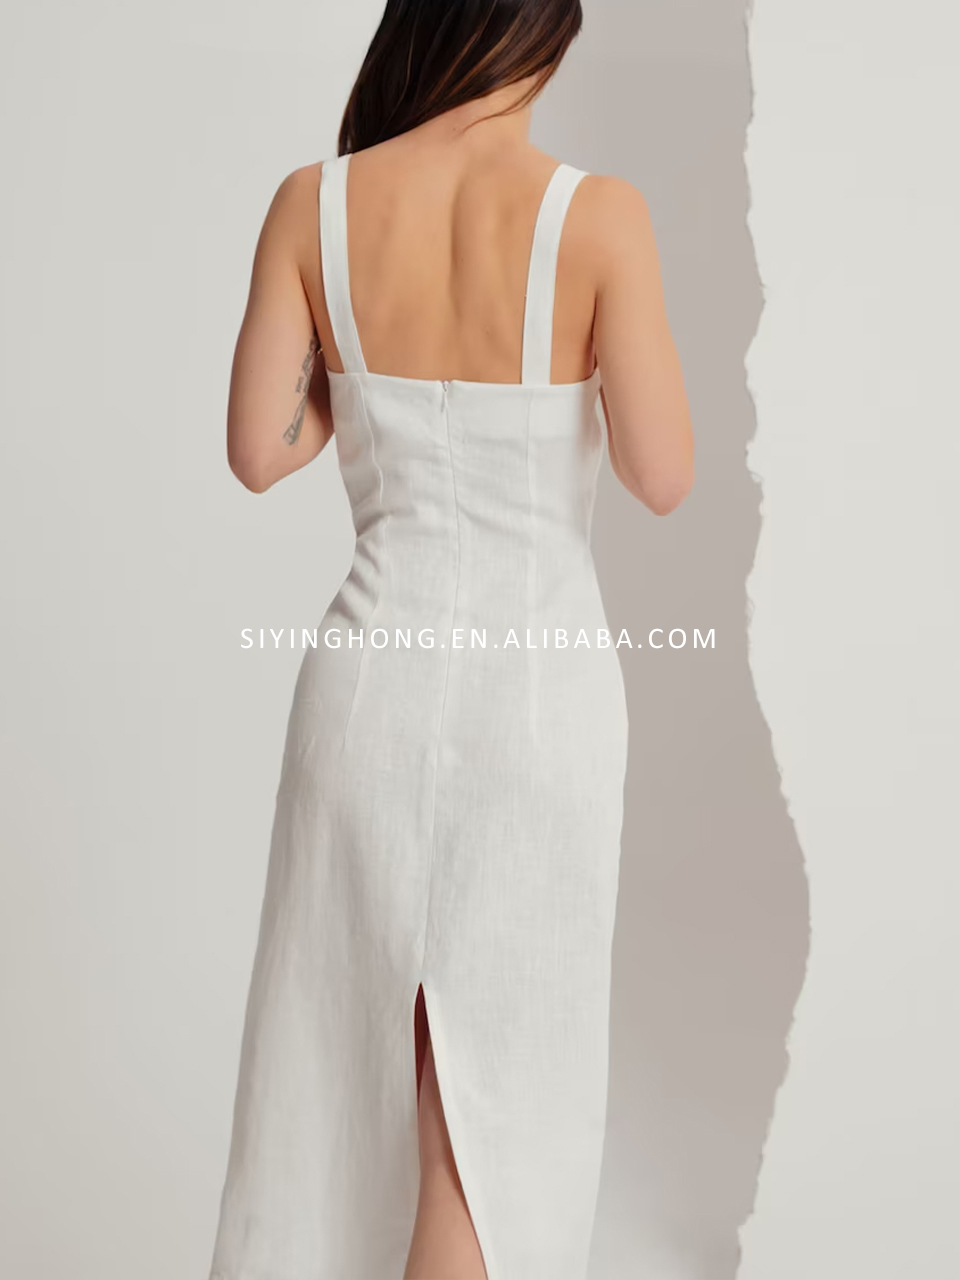 fabrică de rochii pentru doamne fabrică de îmbrăcăminte china personalizați rochie